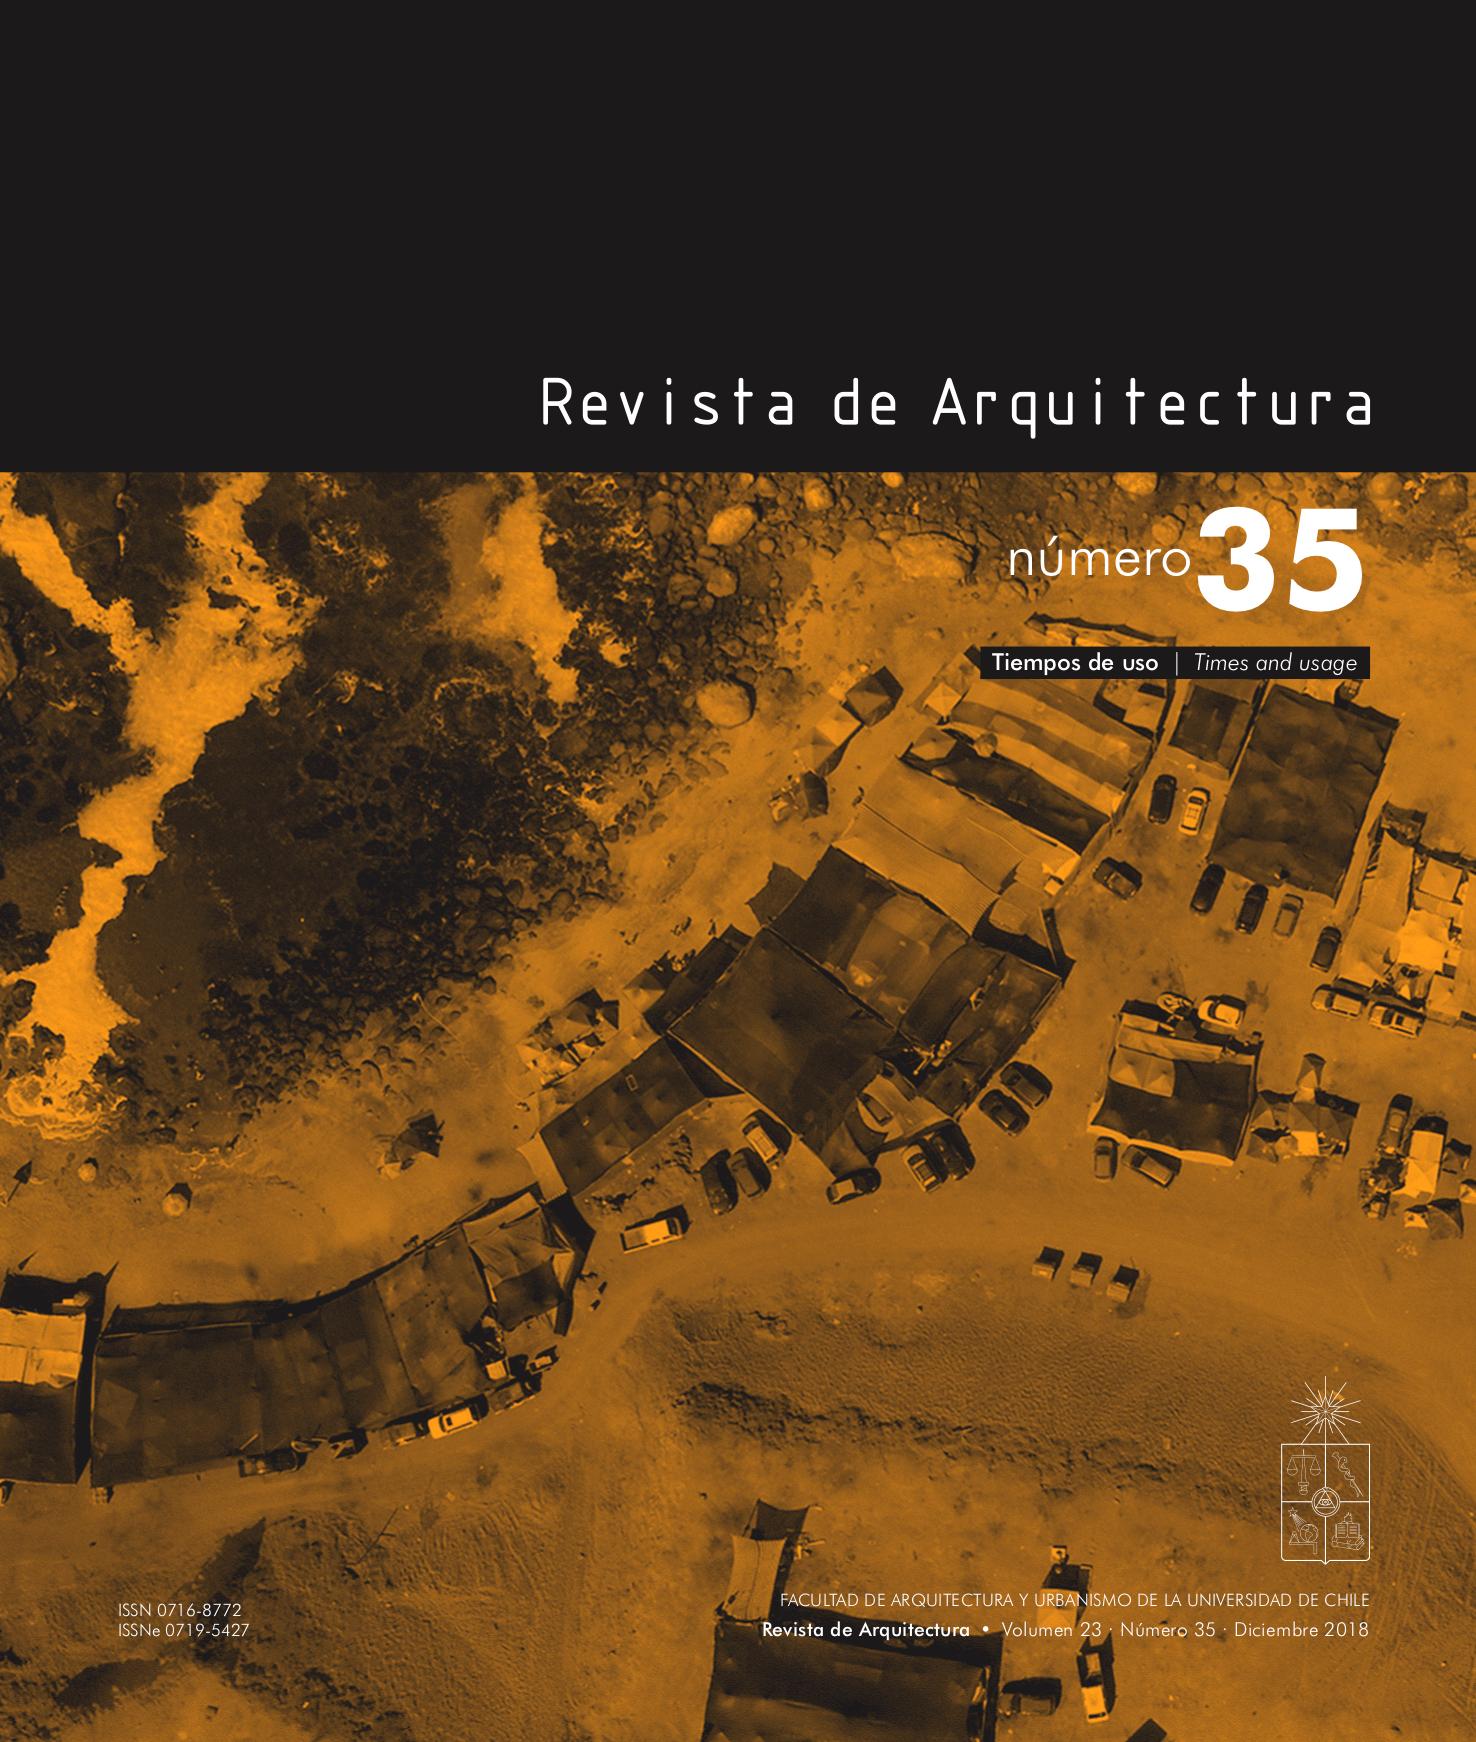 Revista de Arquitectura es una publicación académica de la Facultad de Arquitectura y Urbanismo de la Universidad de Chile que expone contenidos resultantes de investigaciones.